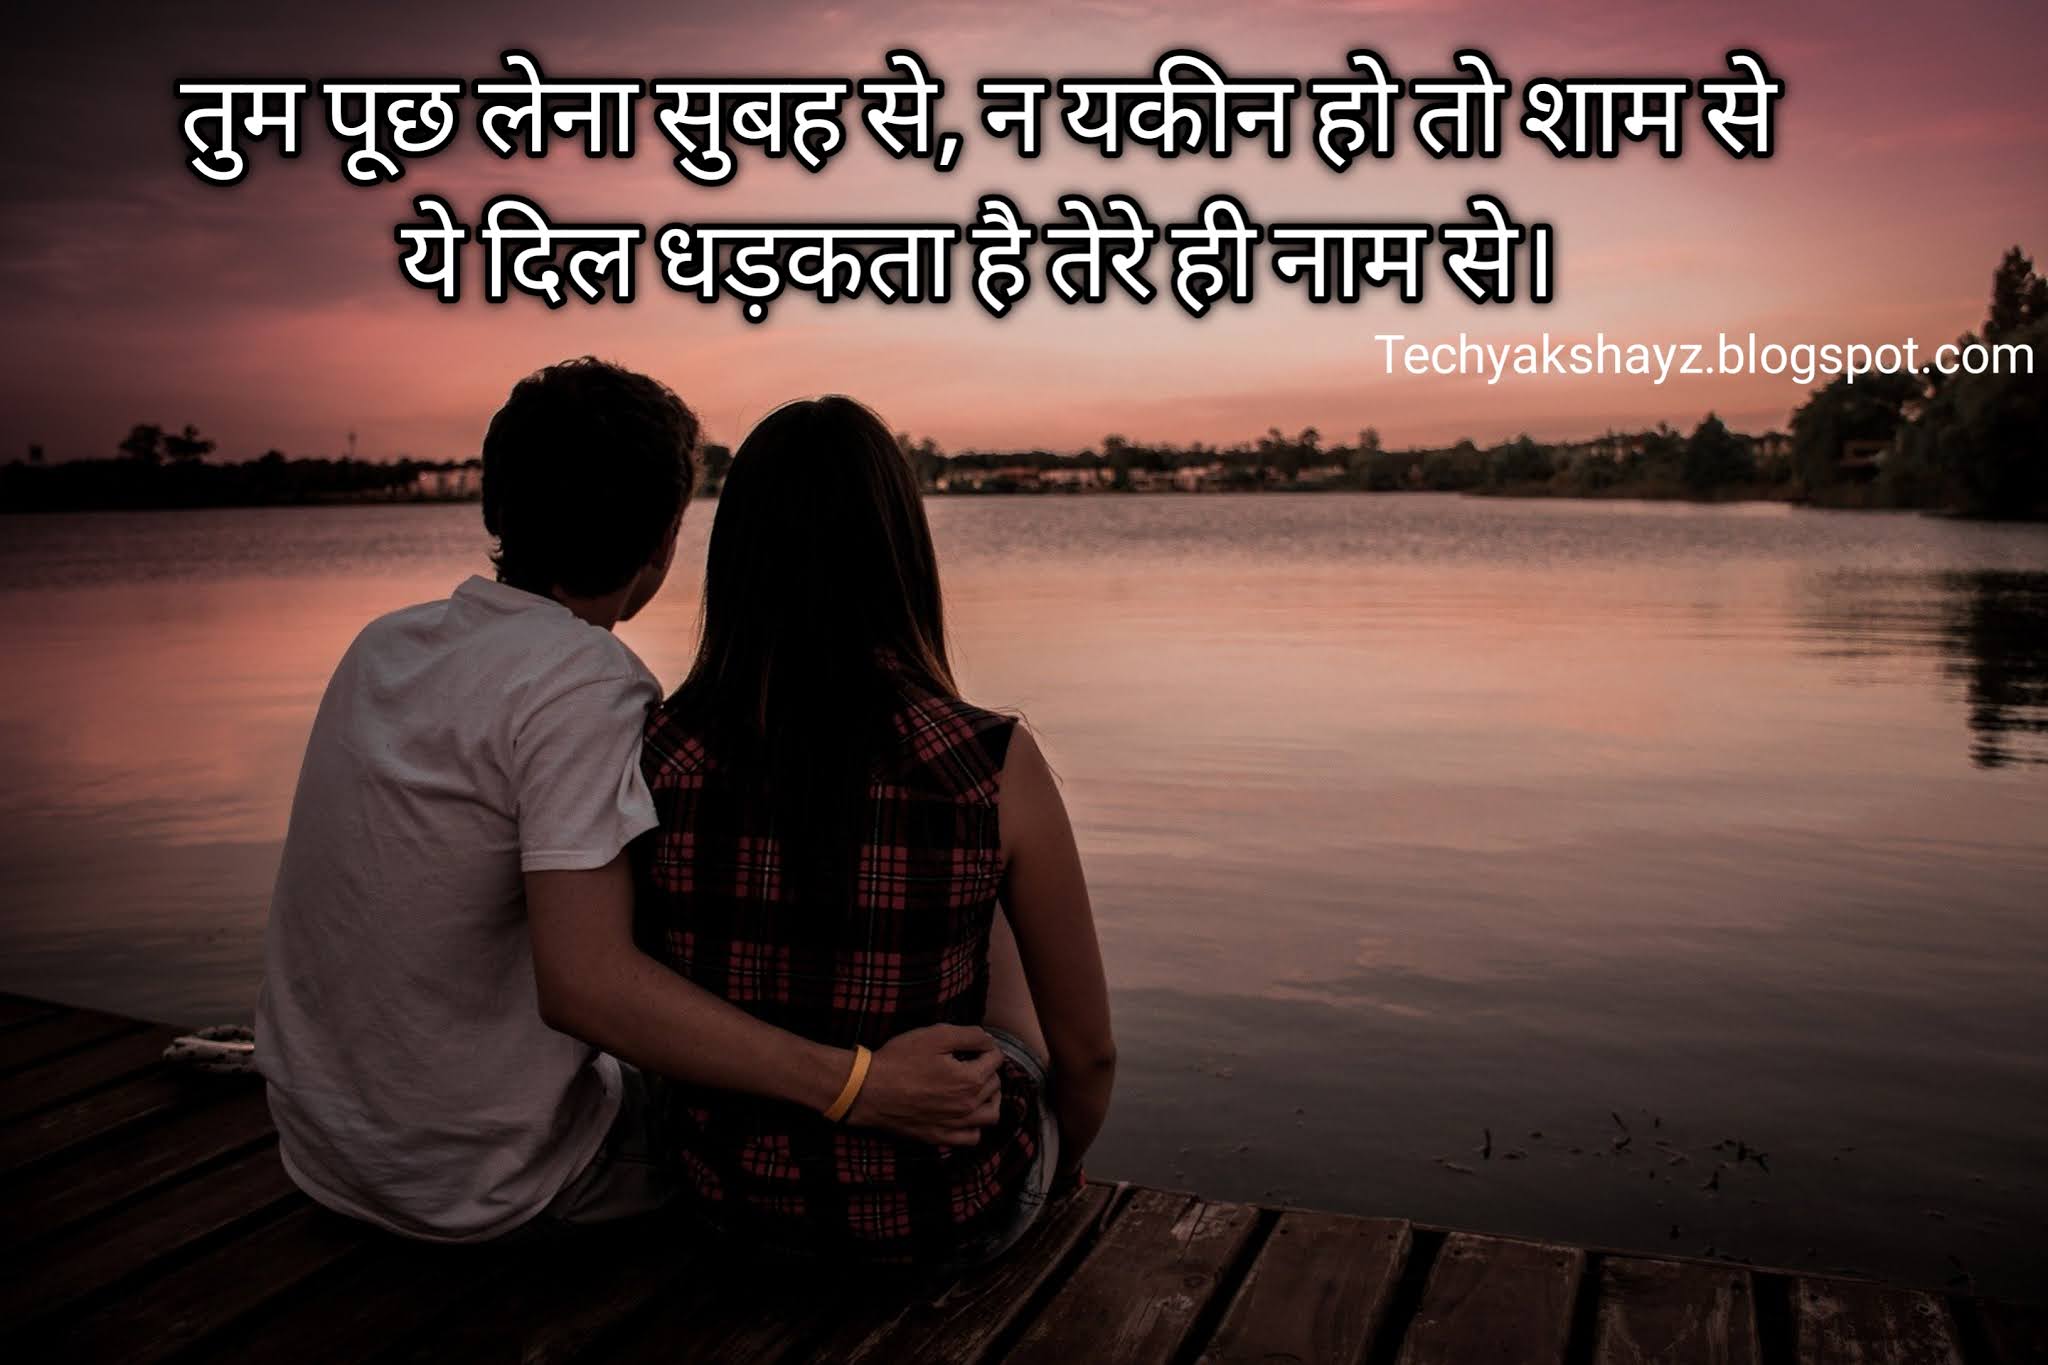 Romantic Love Shayari Image